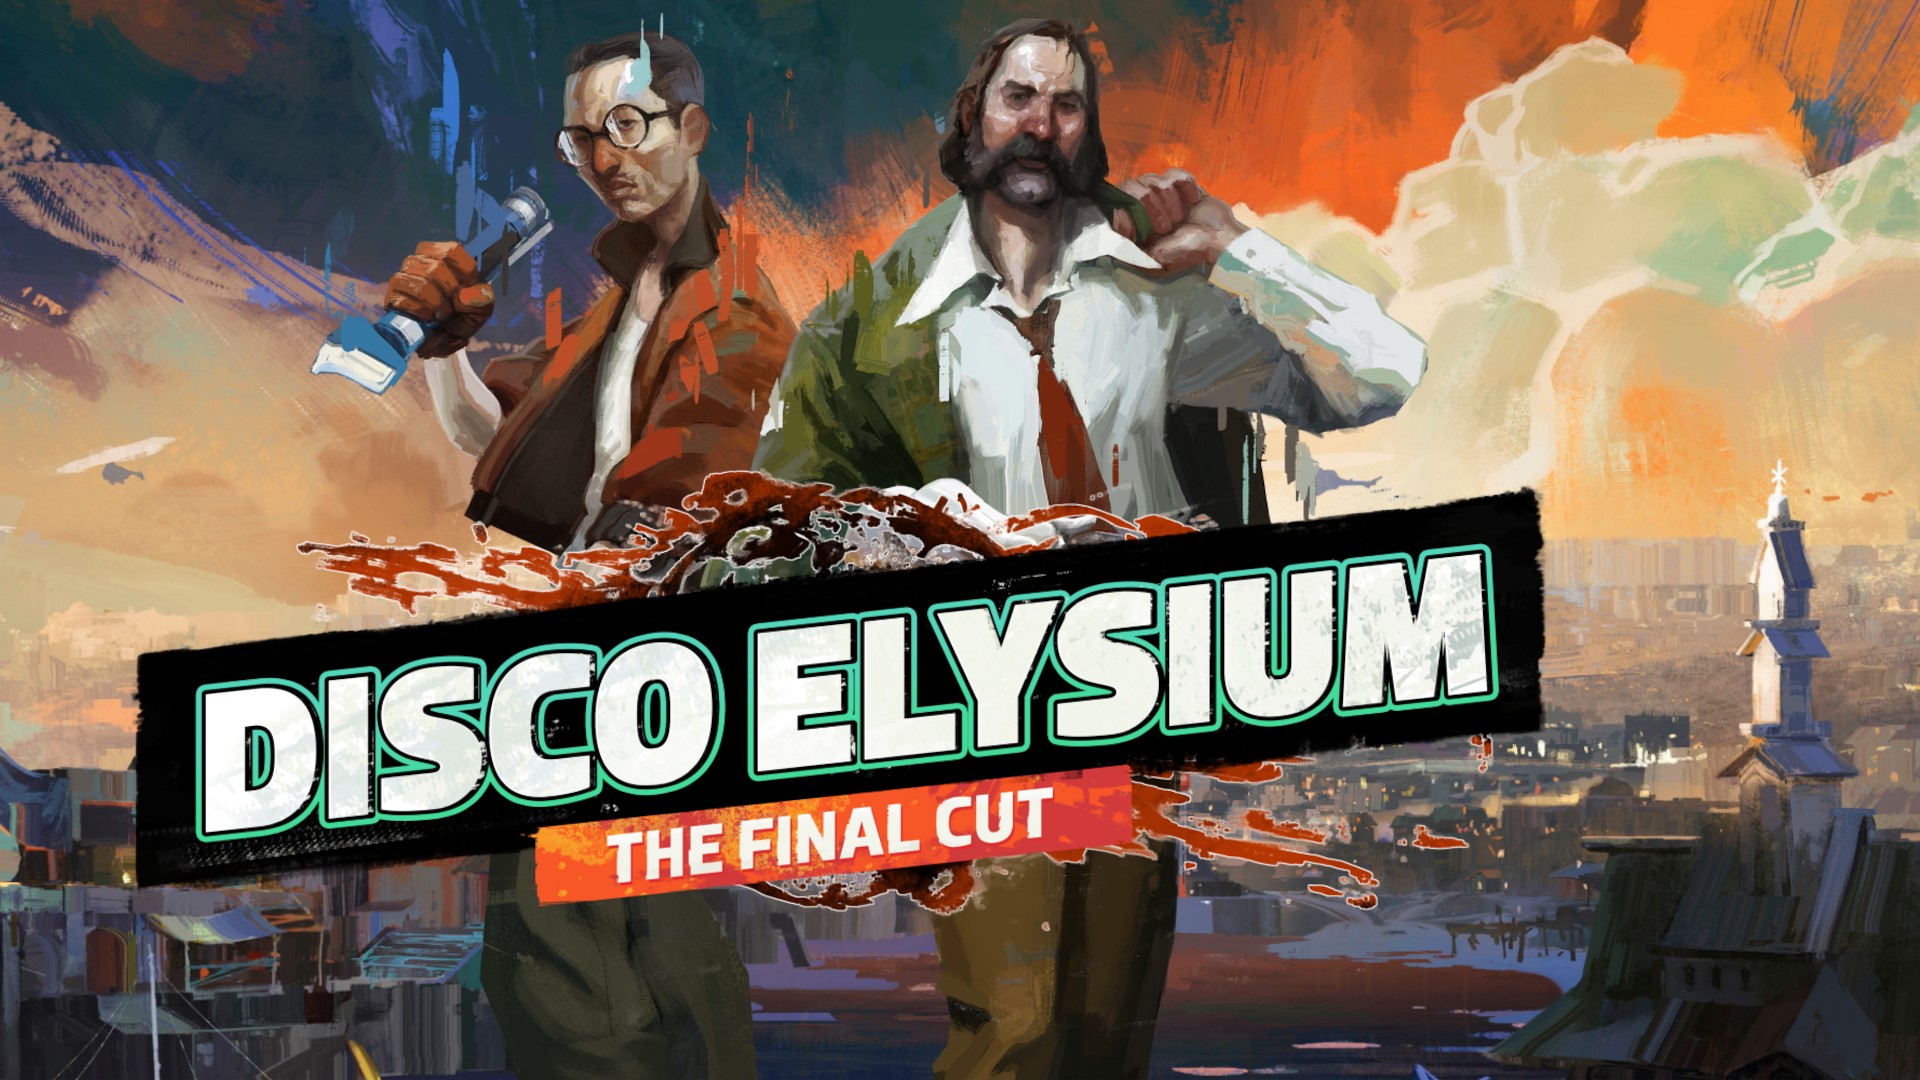 Disco elysium the final cut steam